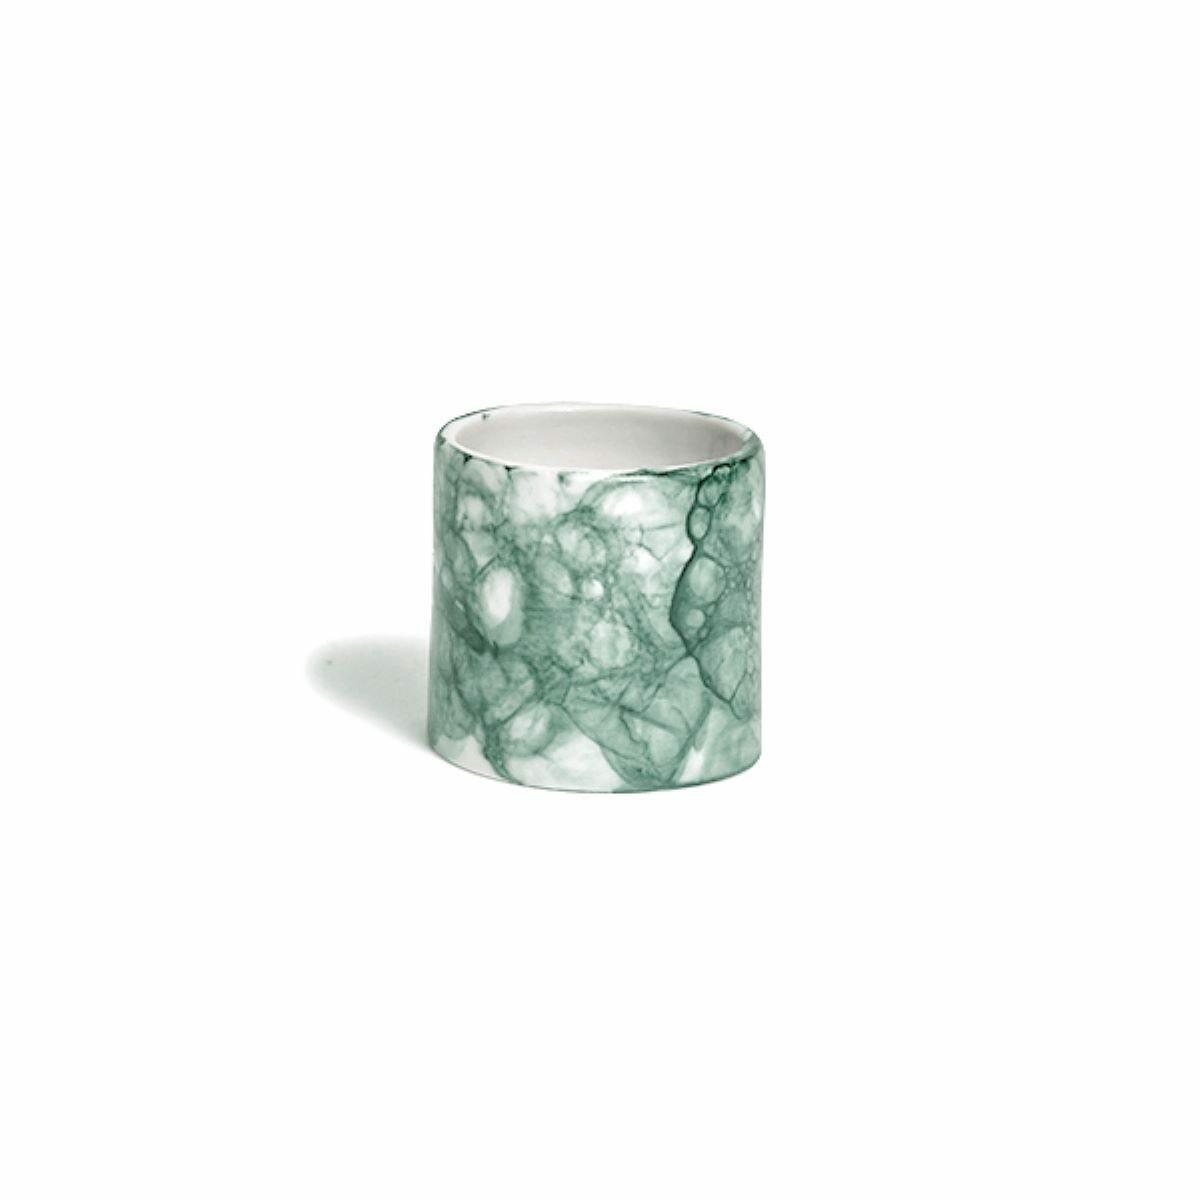 DB Ceramic Napkin Ring in Teal